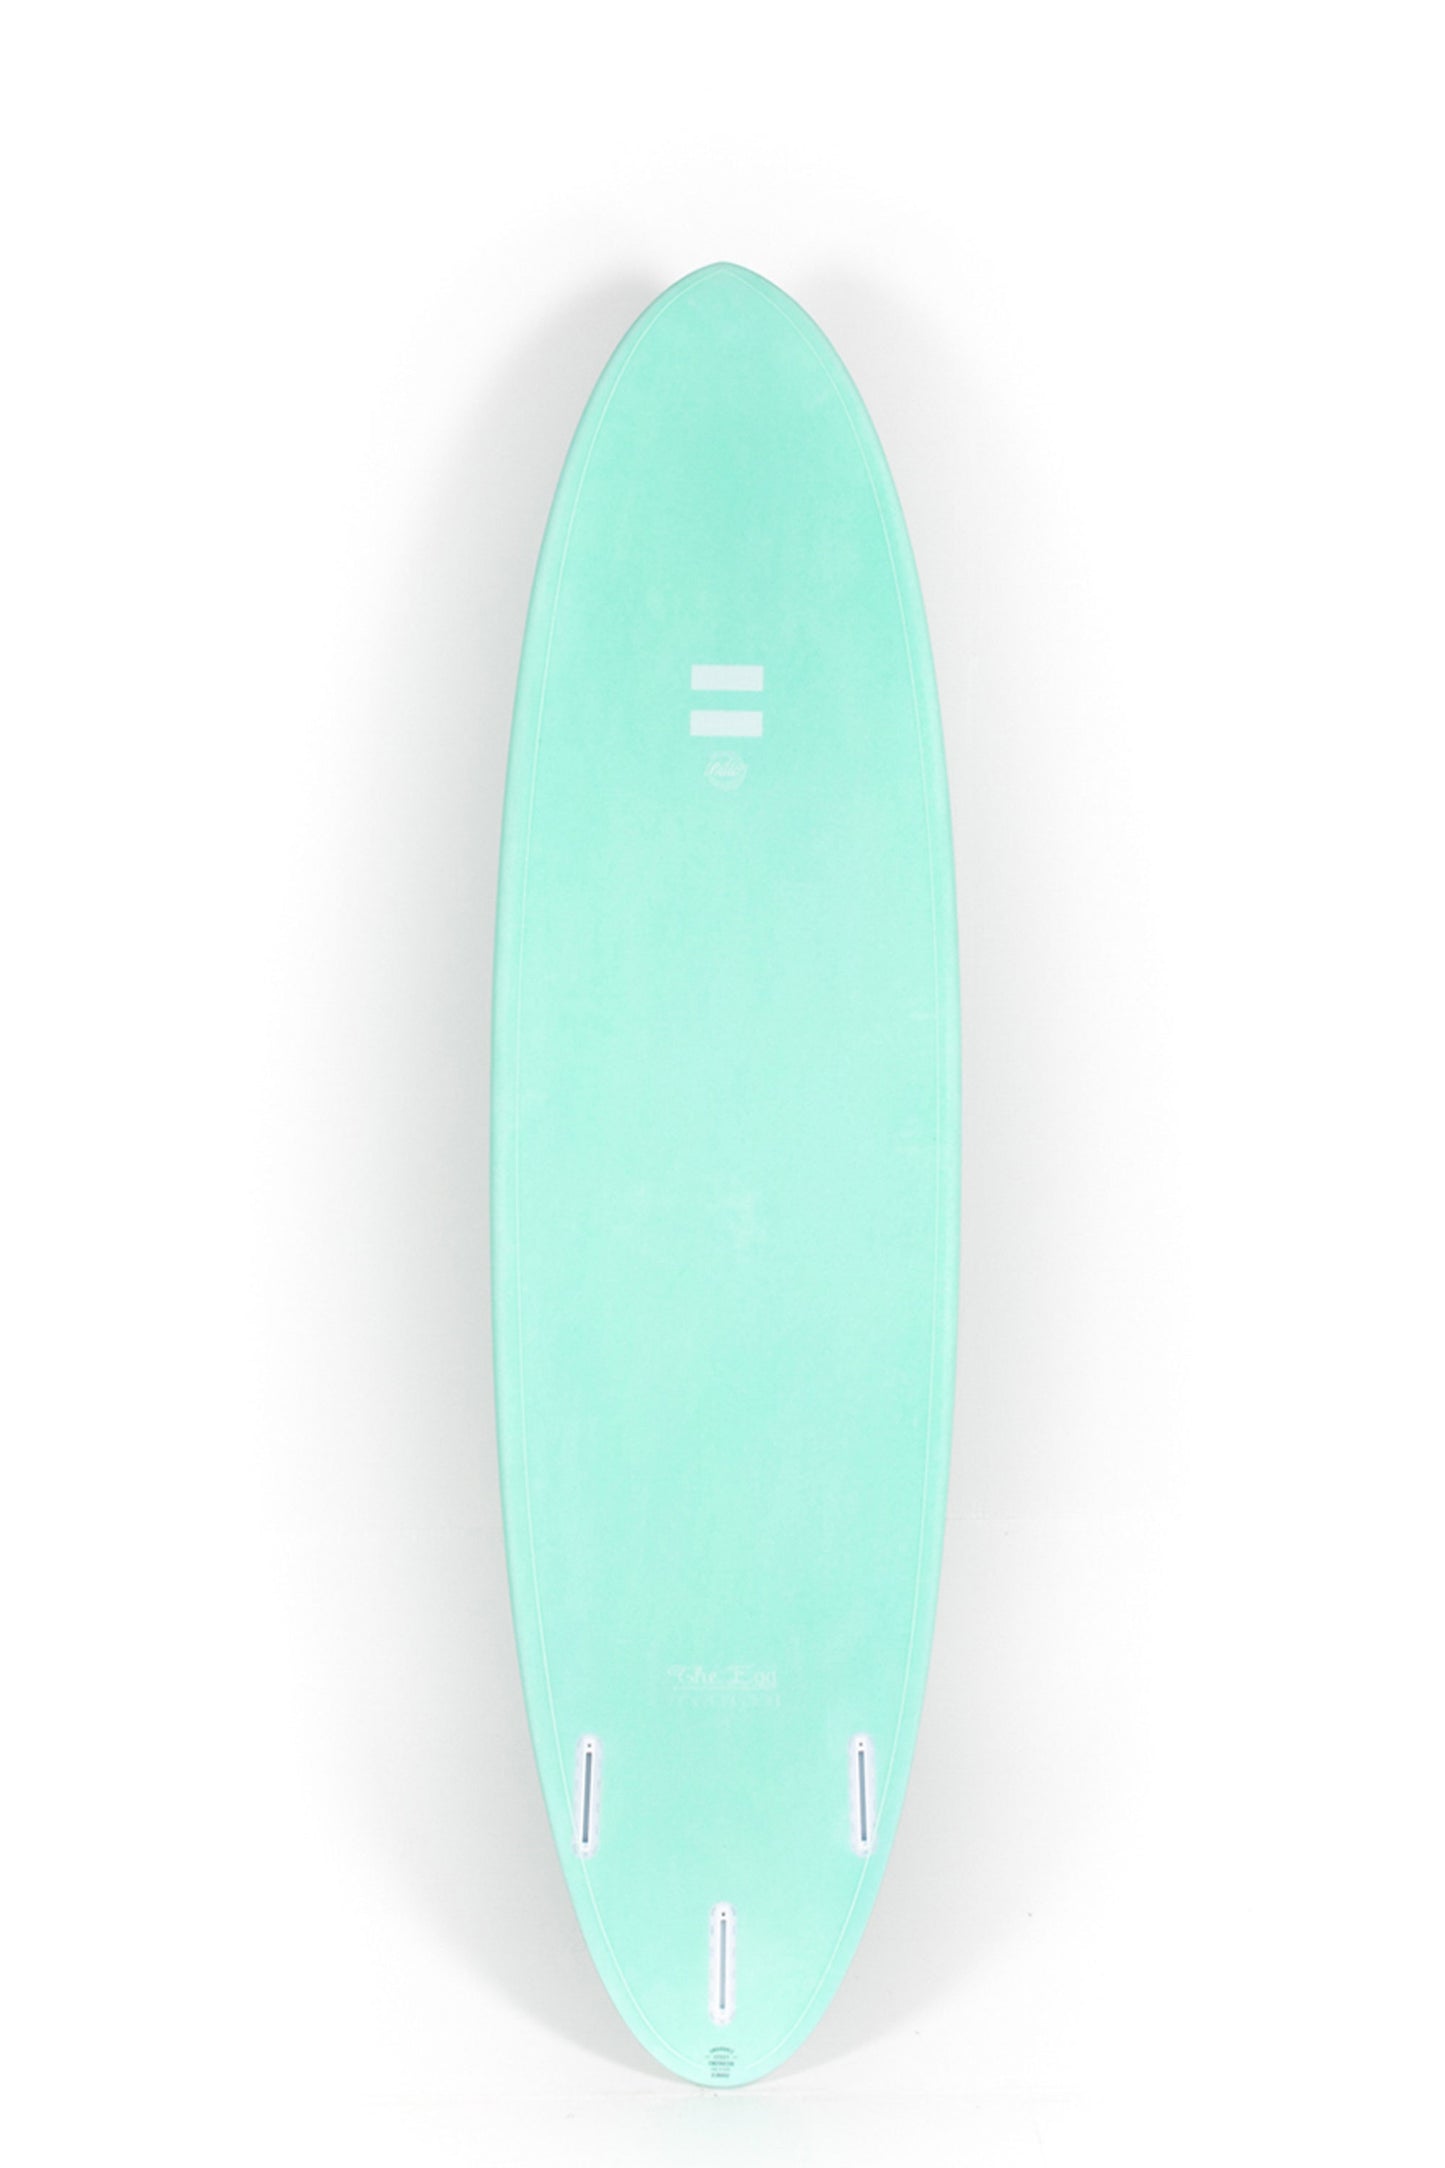 Pukas Surf Shop - Indio Endurance - THE EGG Aqua Mint - 7´10" x 23 1/4 x 3 - 64L